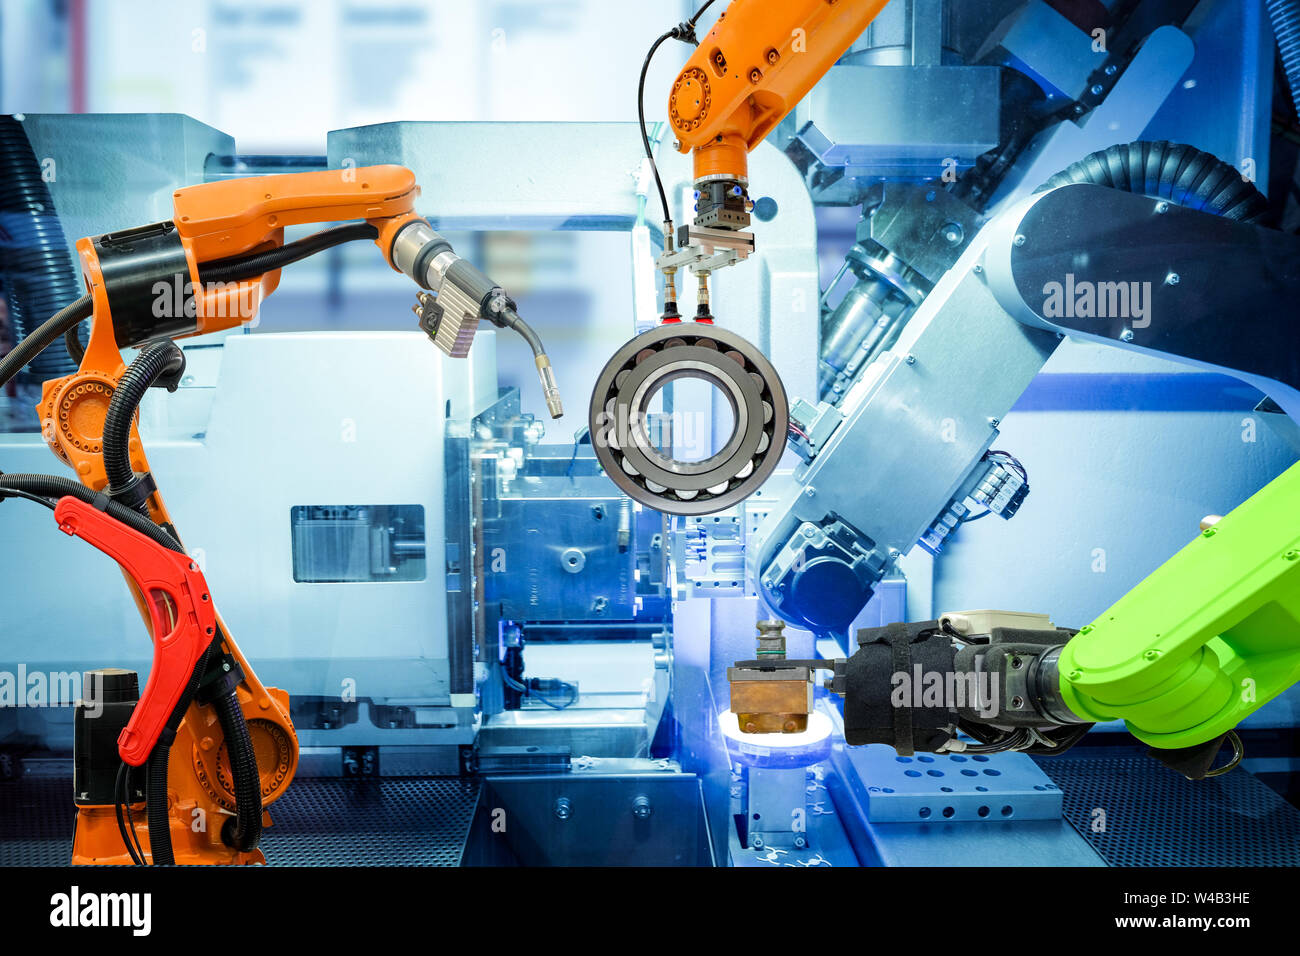 Industrielle Roboterschweißen und Roboter greifen auf smart factory, auf Maschine blau Ton Farbe Hintergrund, Industrie 4.0 und Technologie. Stockfoto